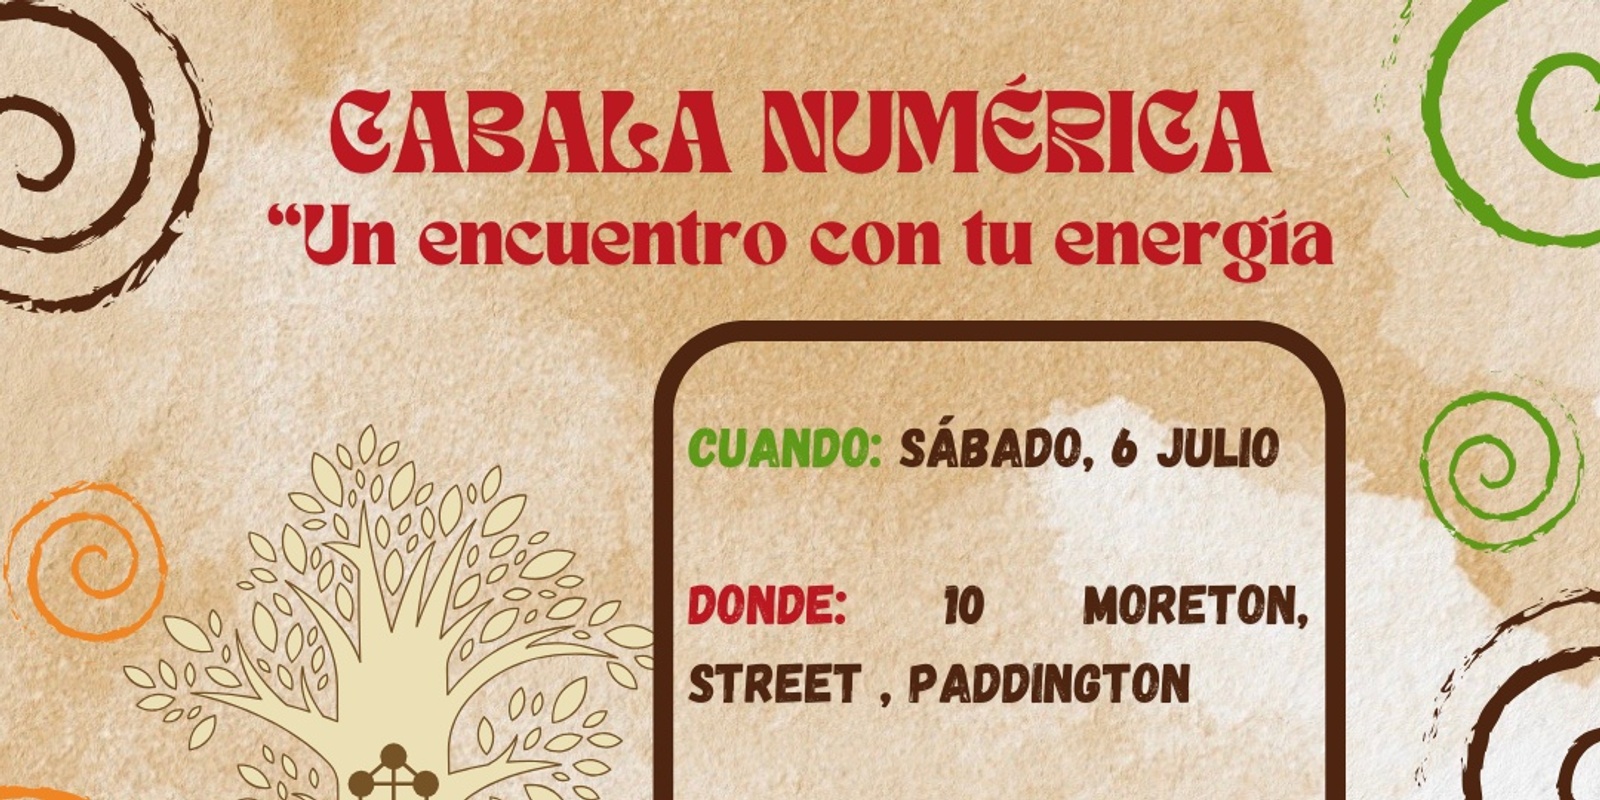 Banner image for Cábala Numerica: "Un encuentro con tu energía "